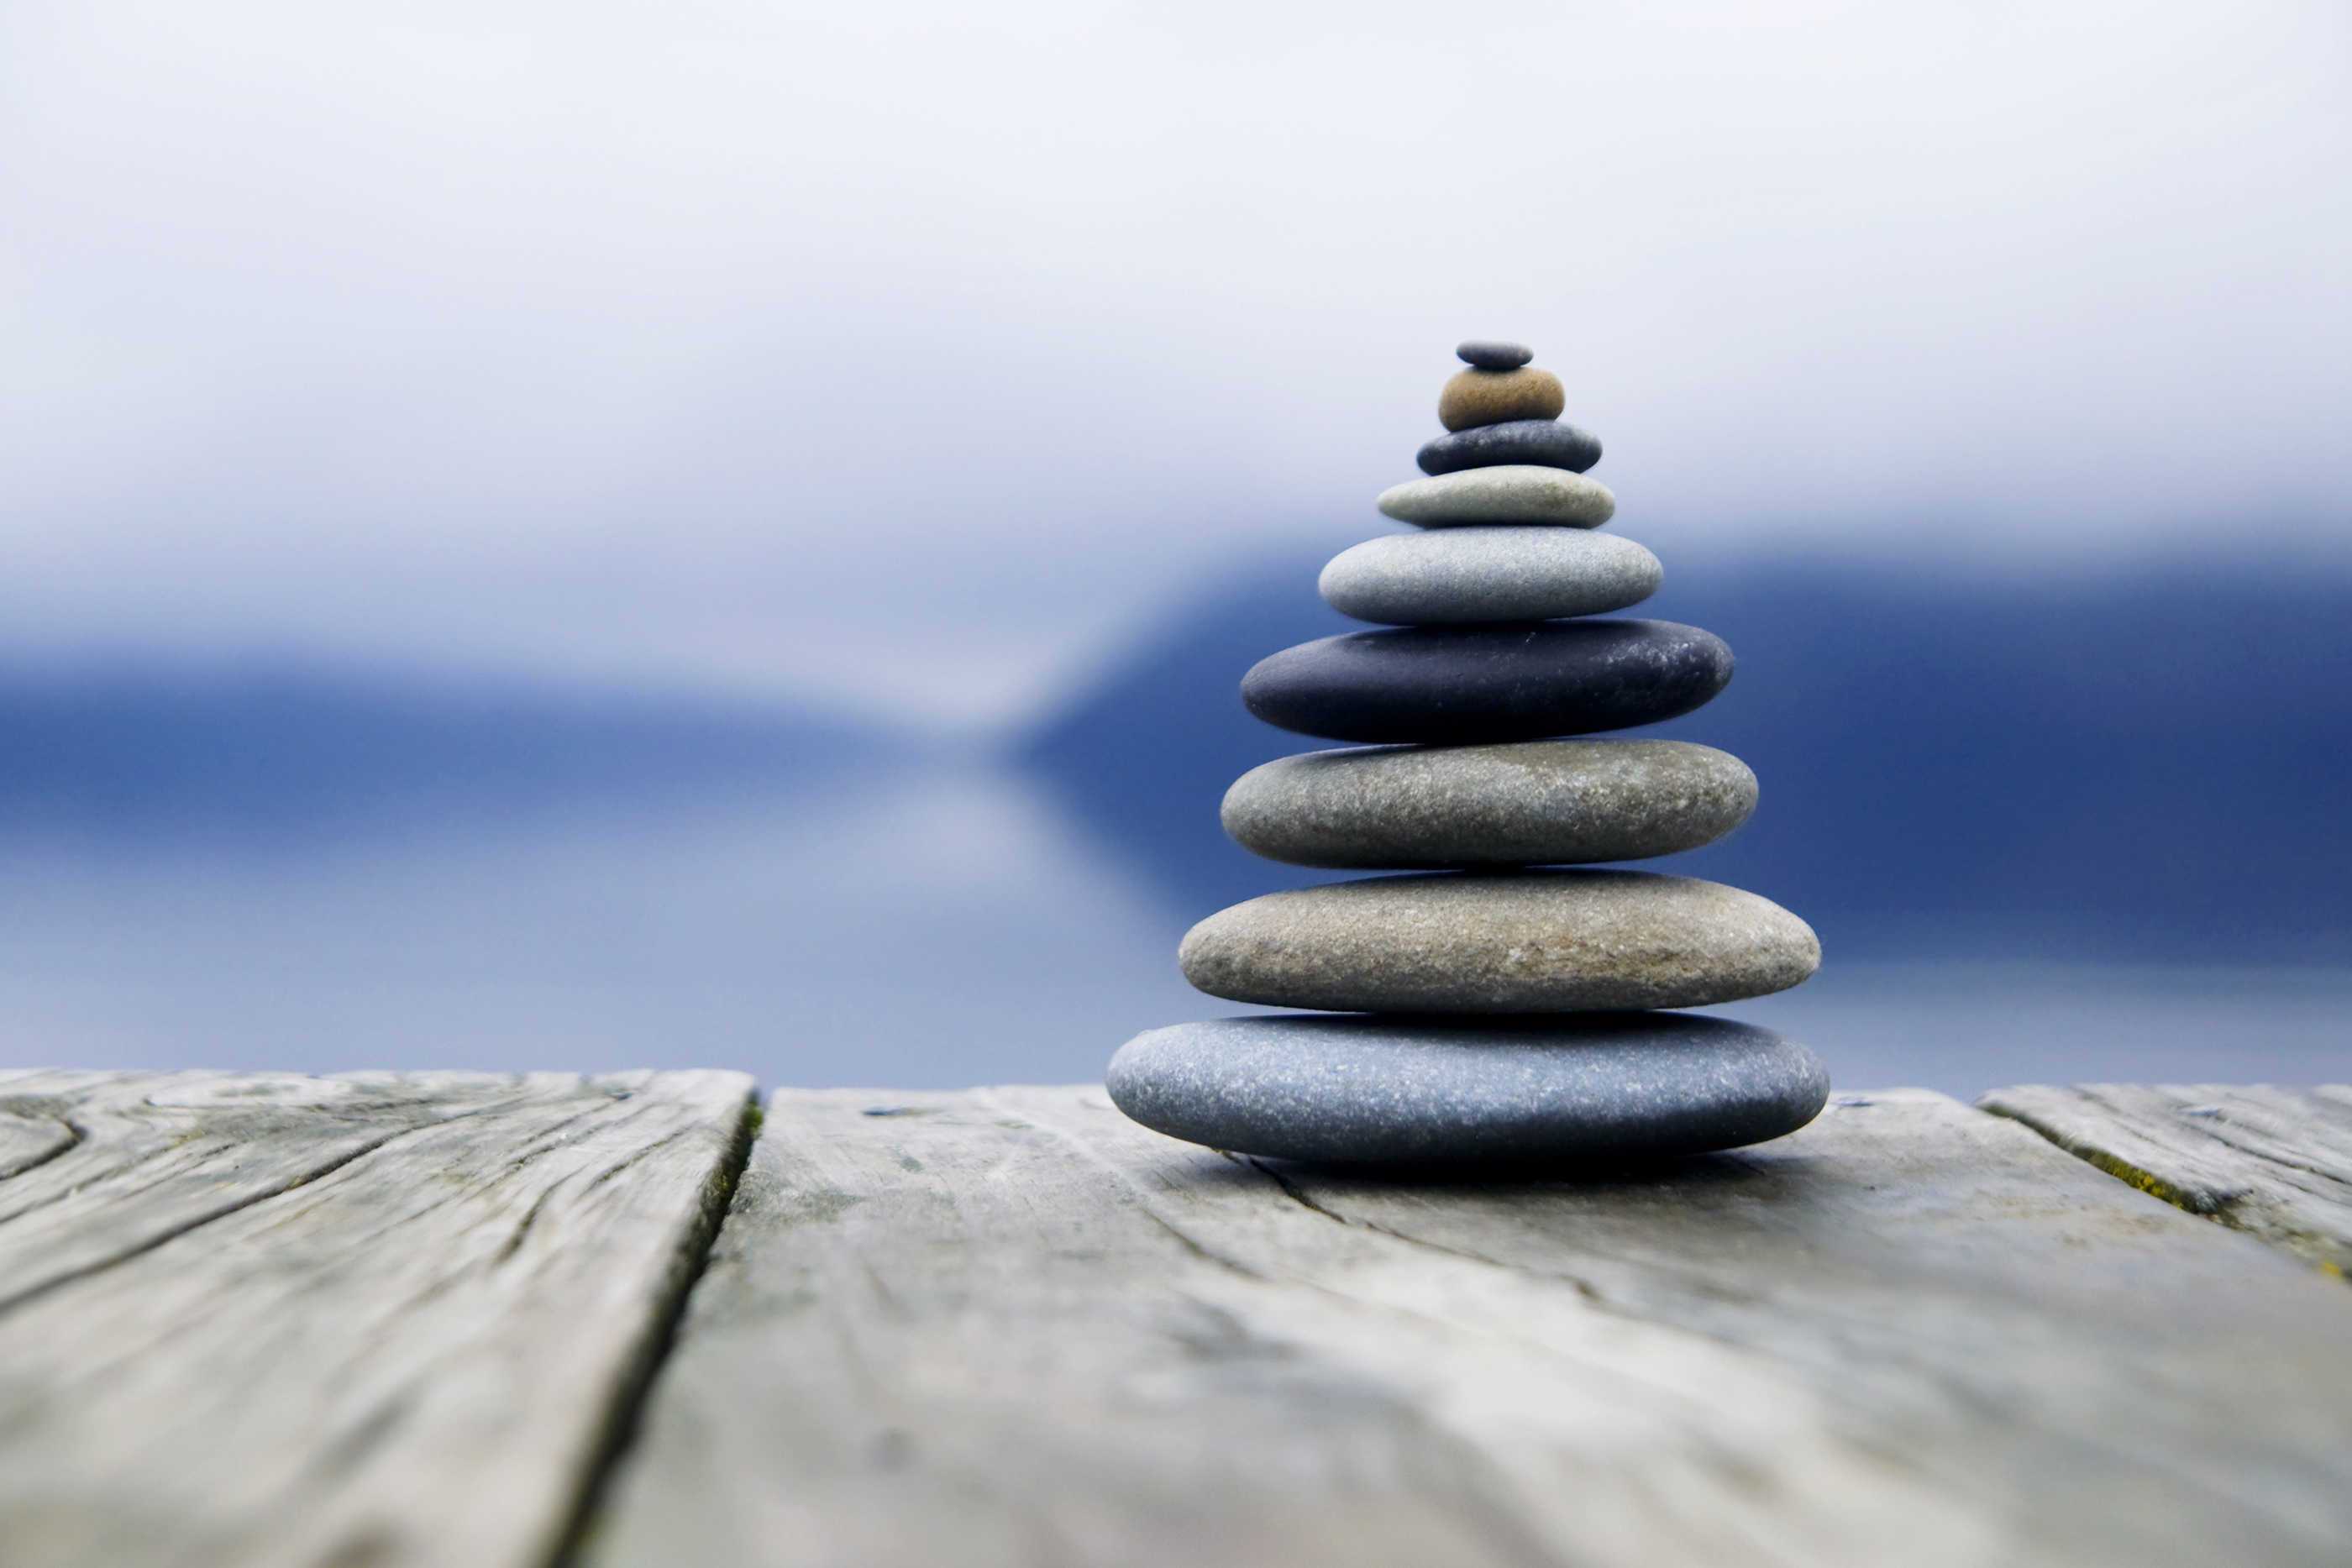 Zen Balancing Rocks o a Deck, New Zealand | Larry Berkelhammer